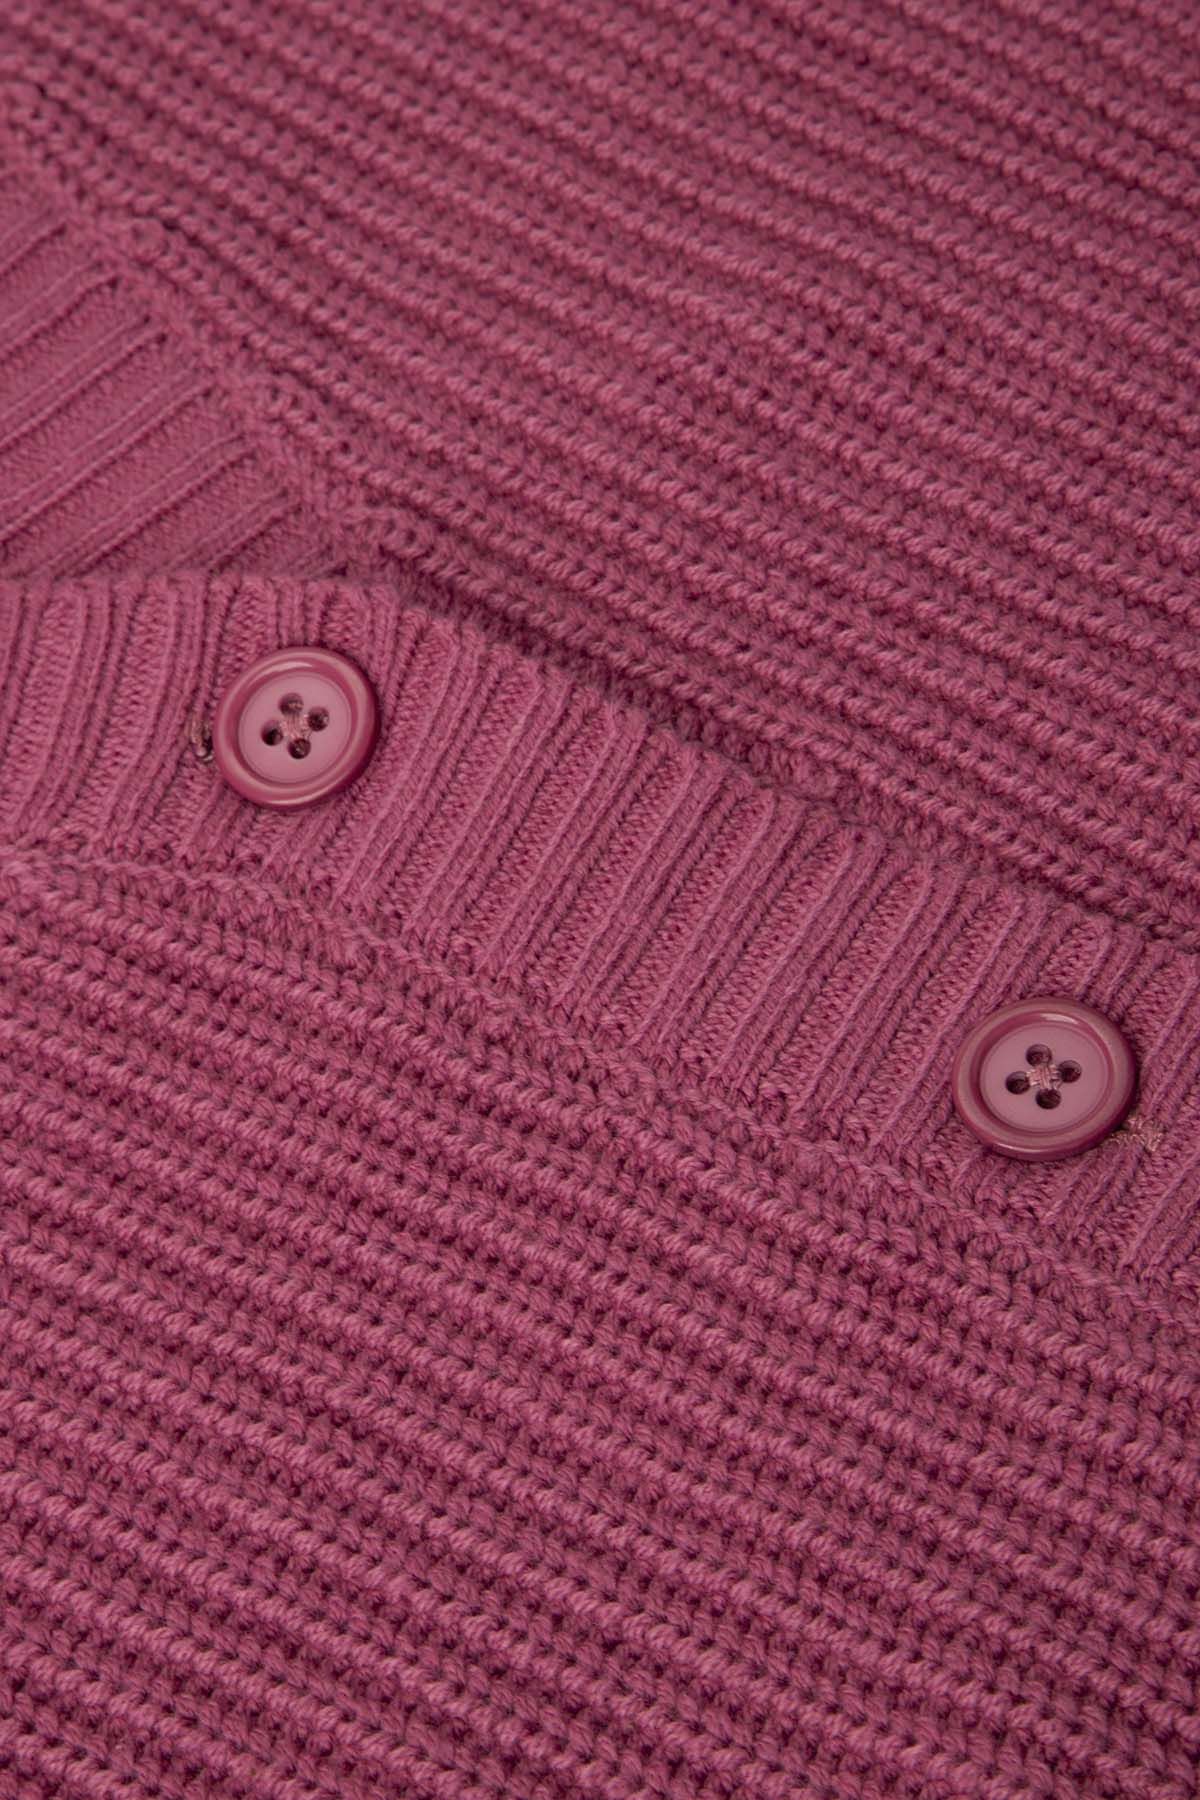 Sweter rozpinany dzianinowy różowy kardigan z dekoltem w serek 2227229